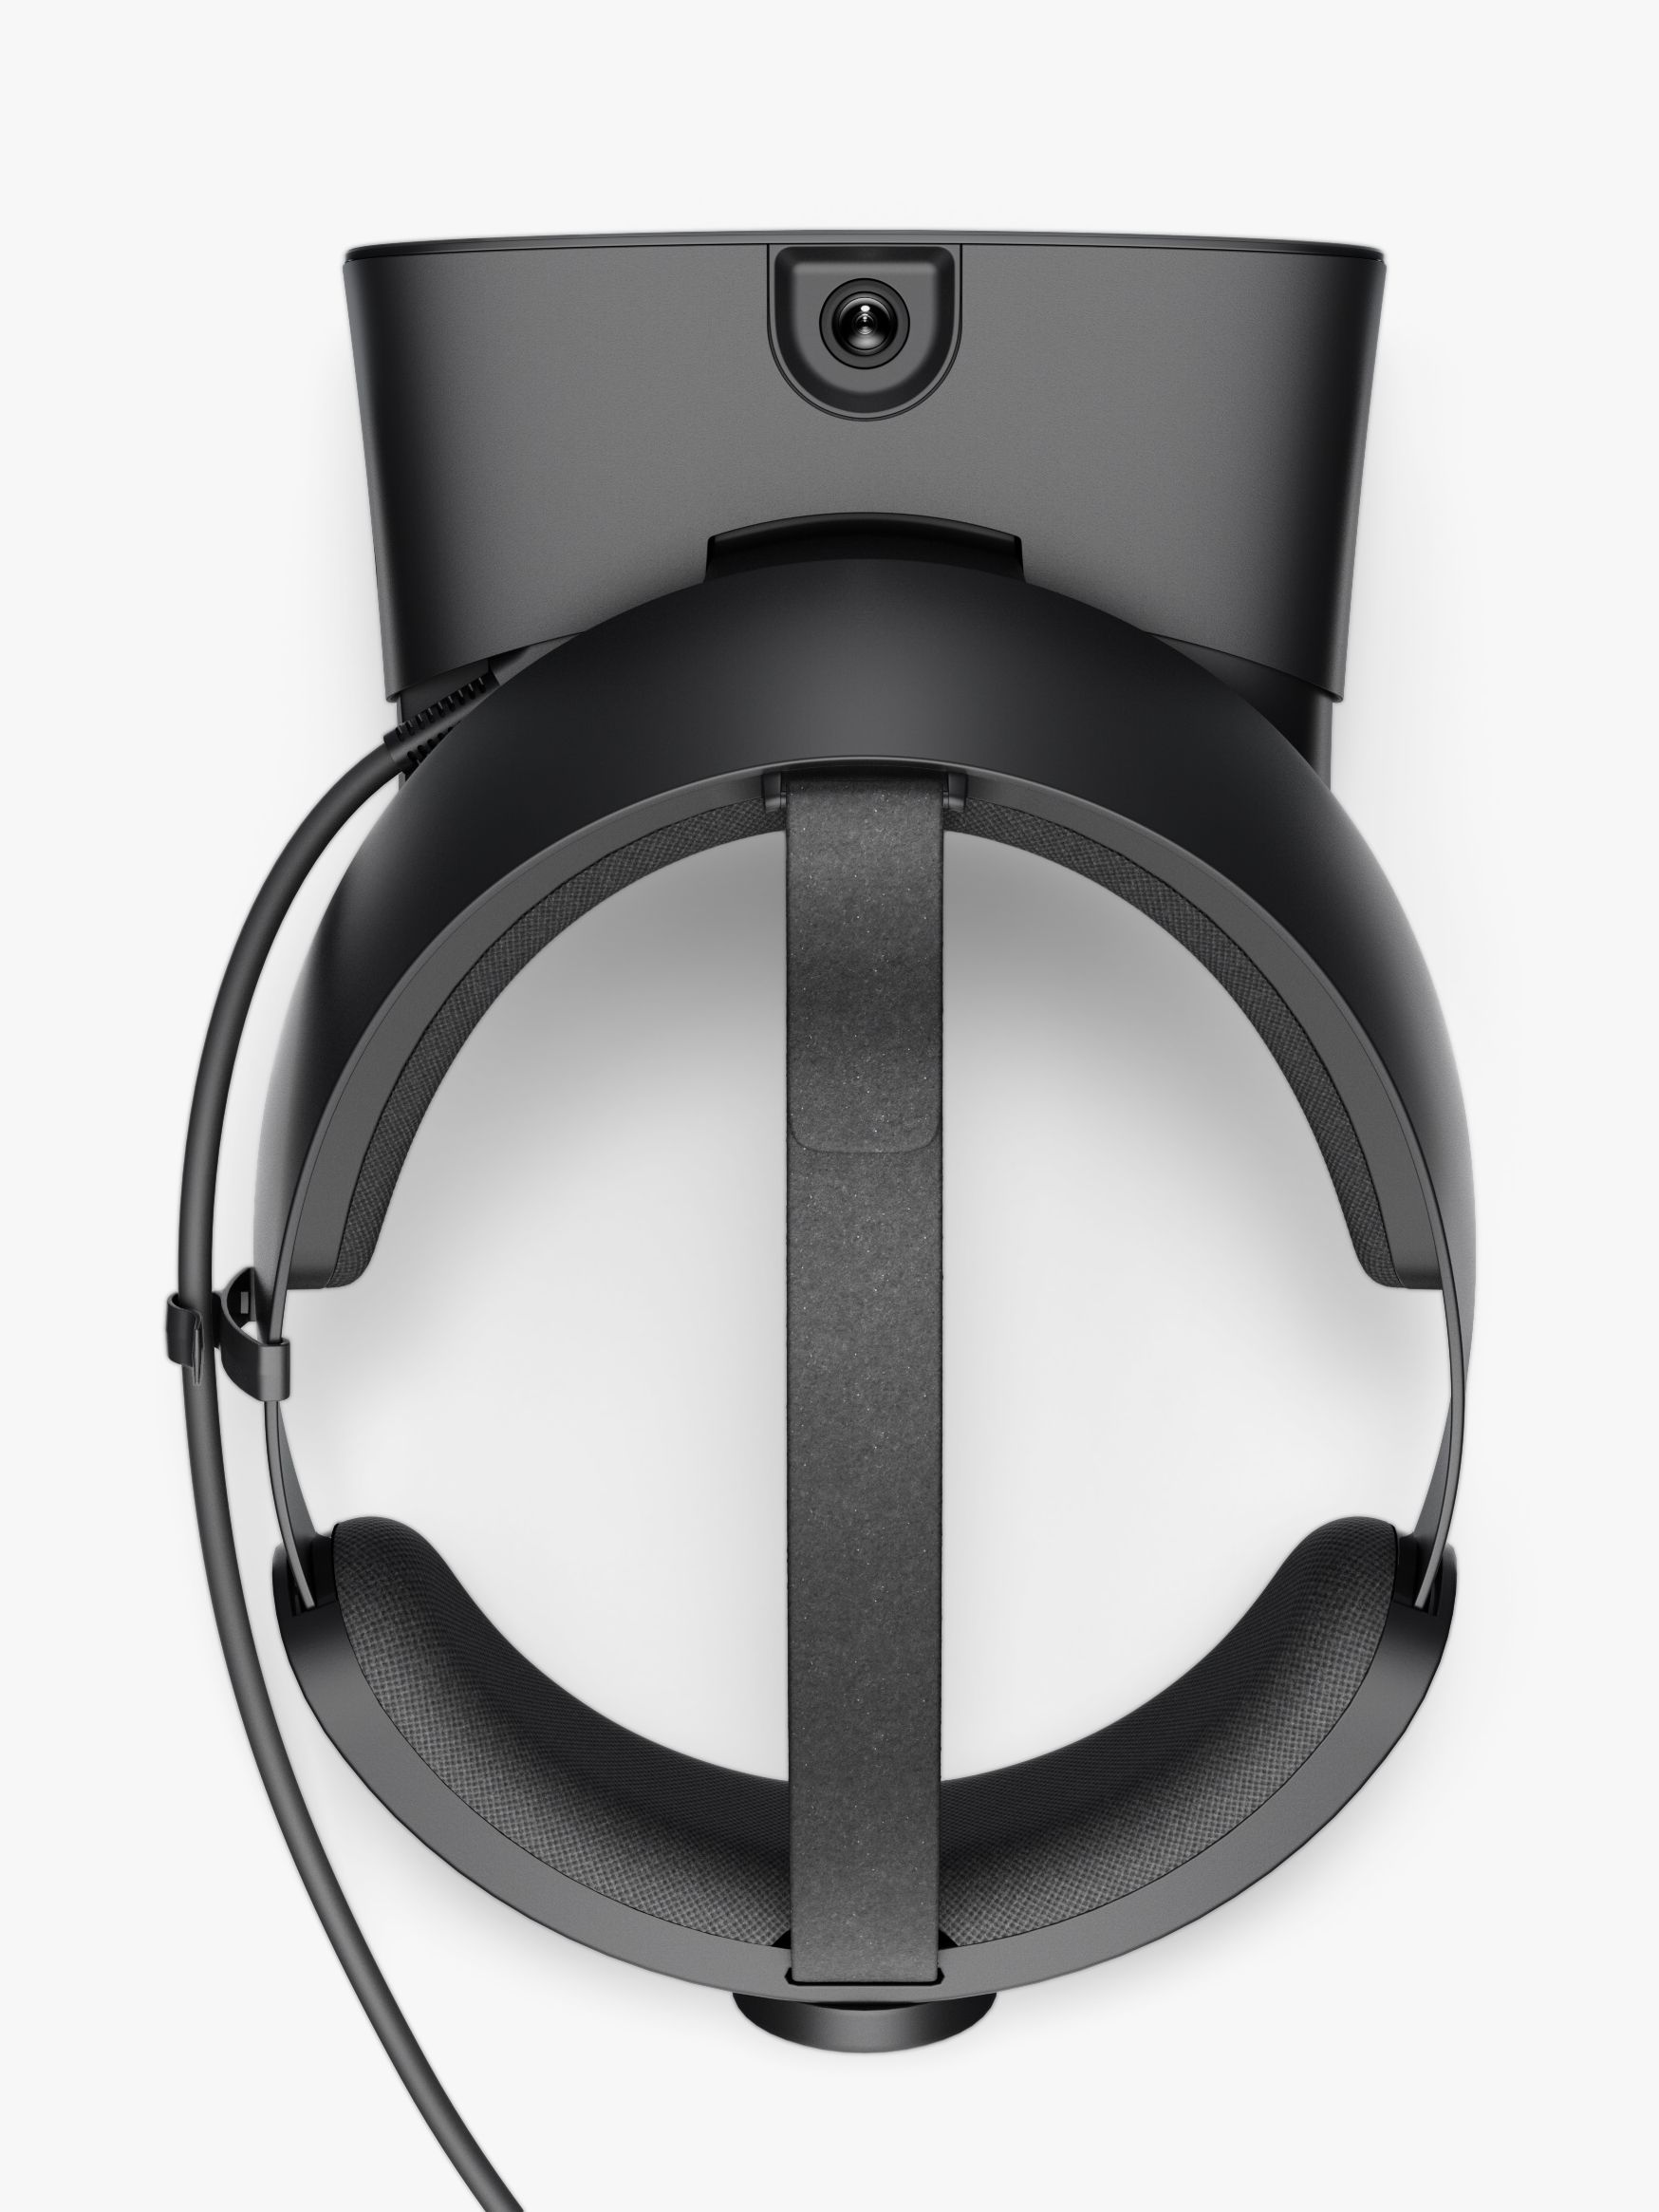 vr oculus rift headset